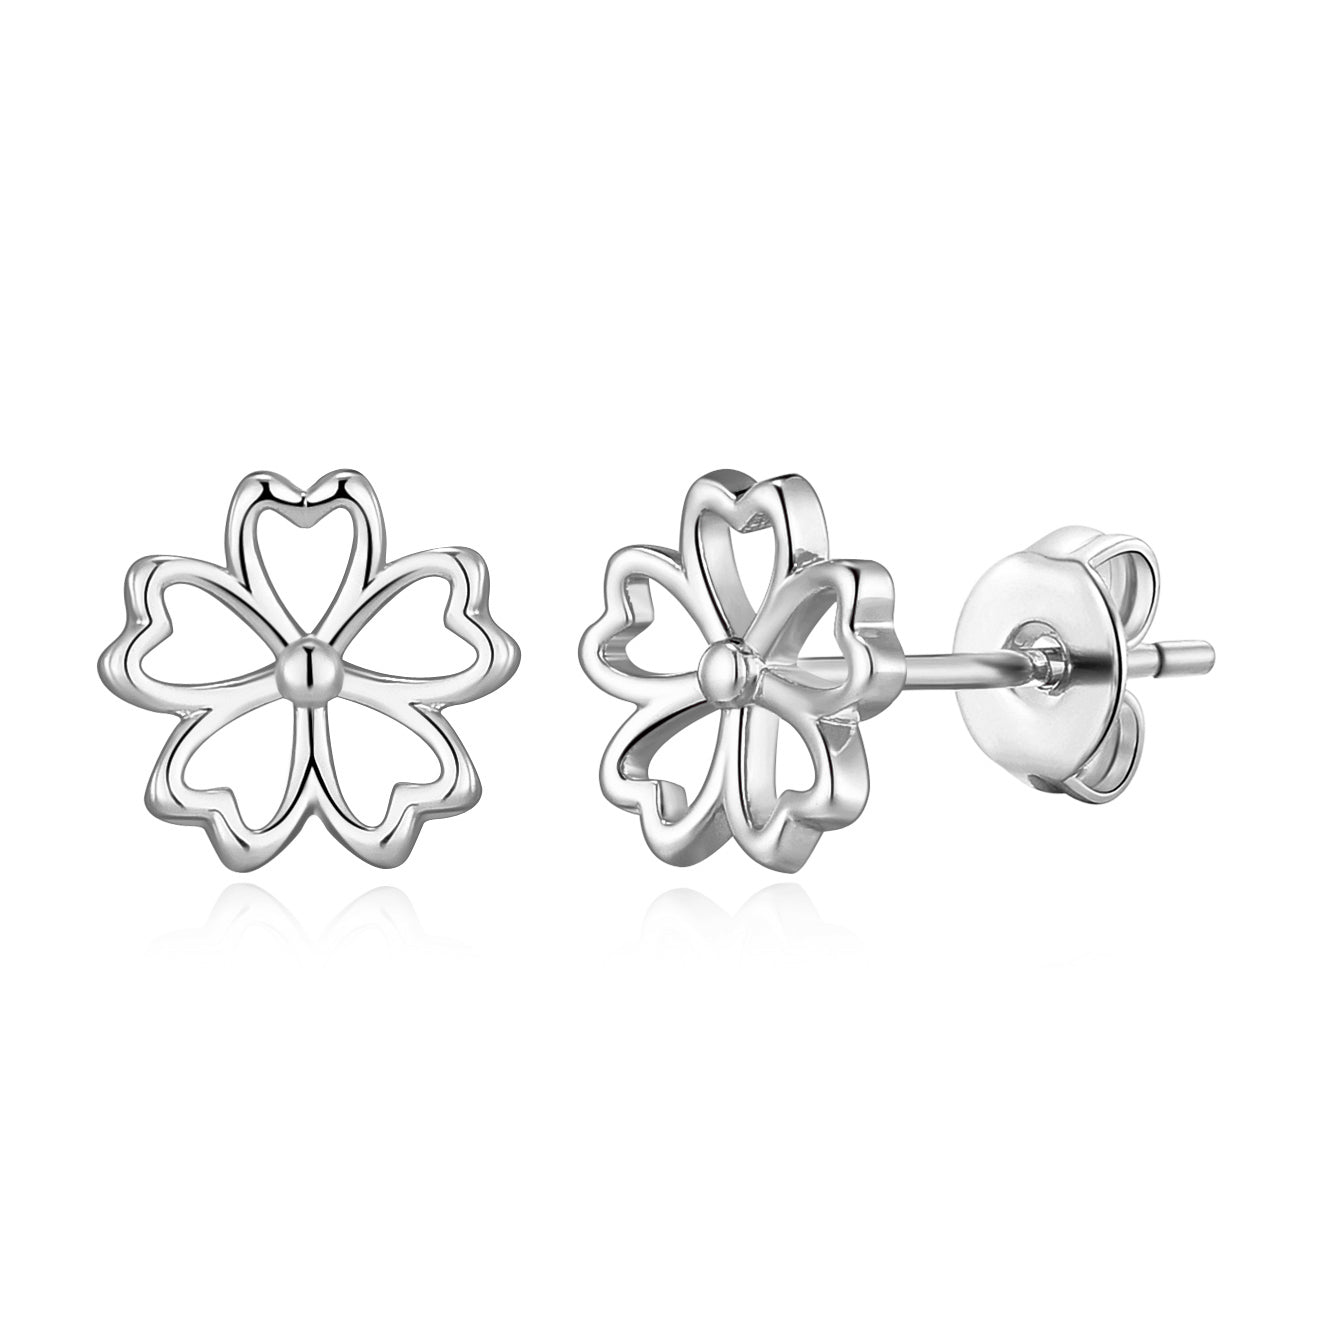 Silver Plated Flower Petal Earrings by Philip Jones Jewellery